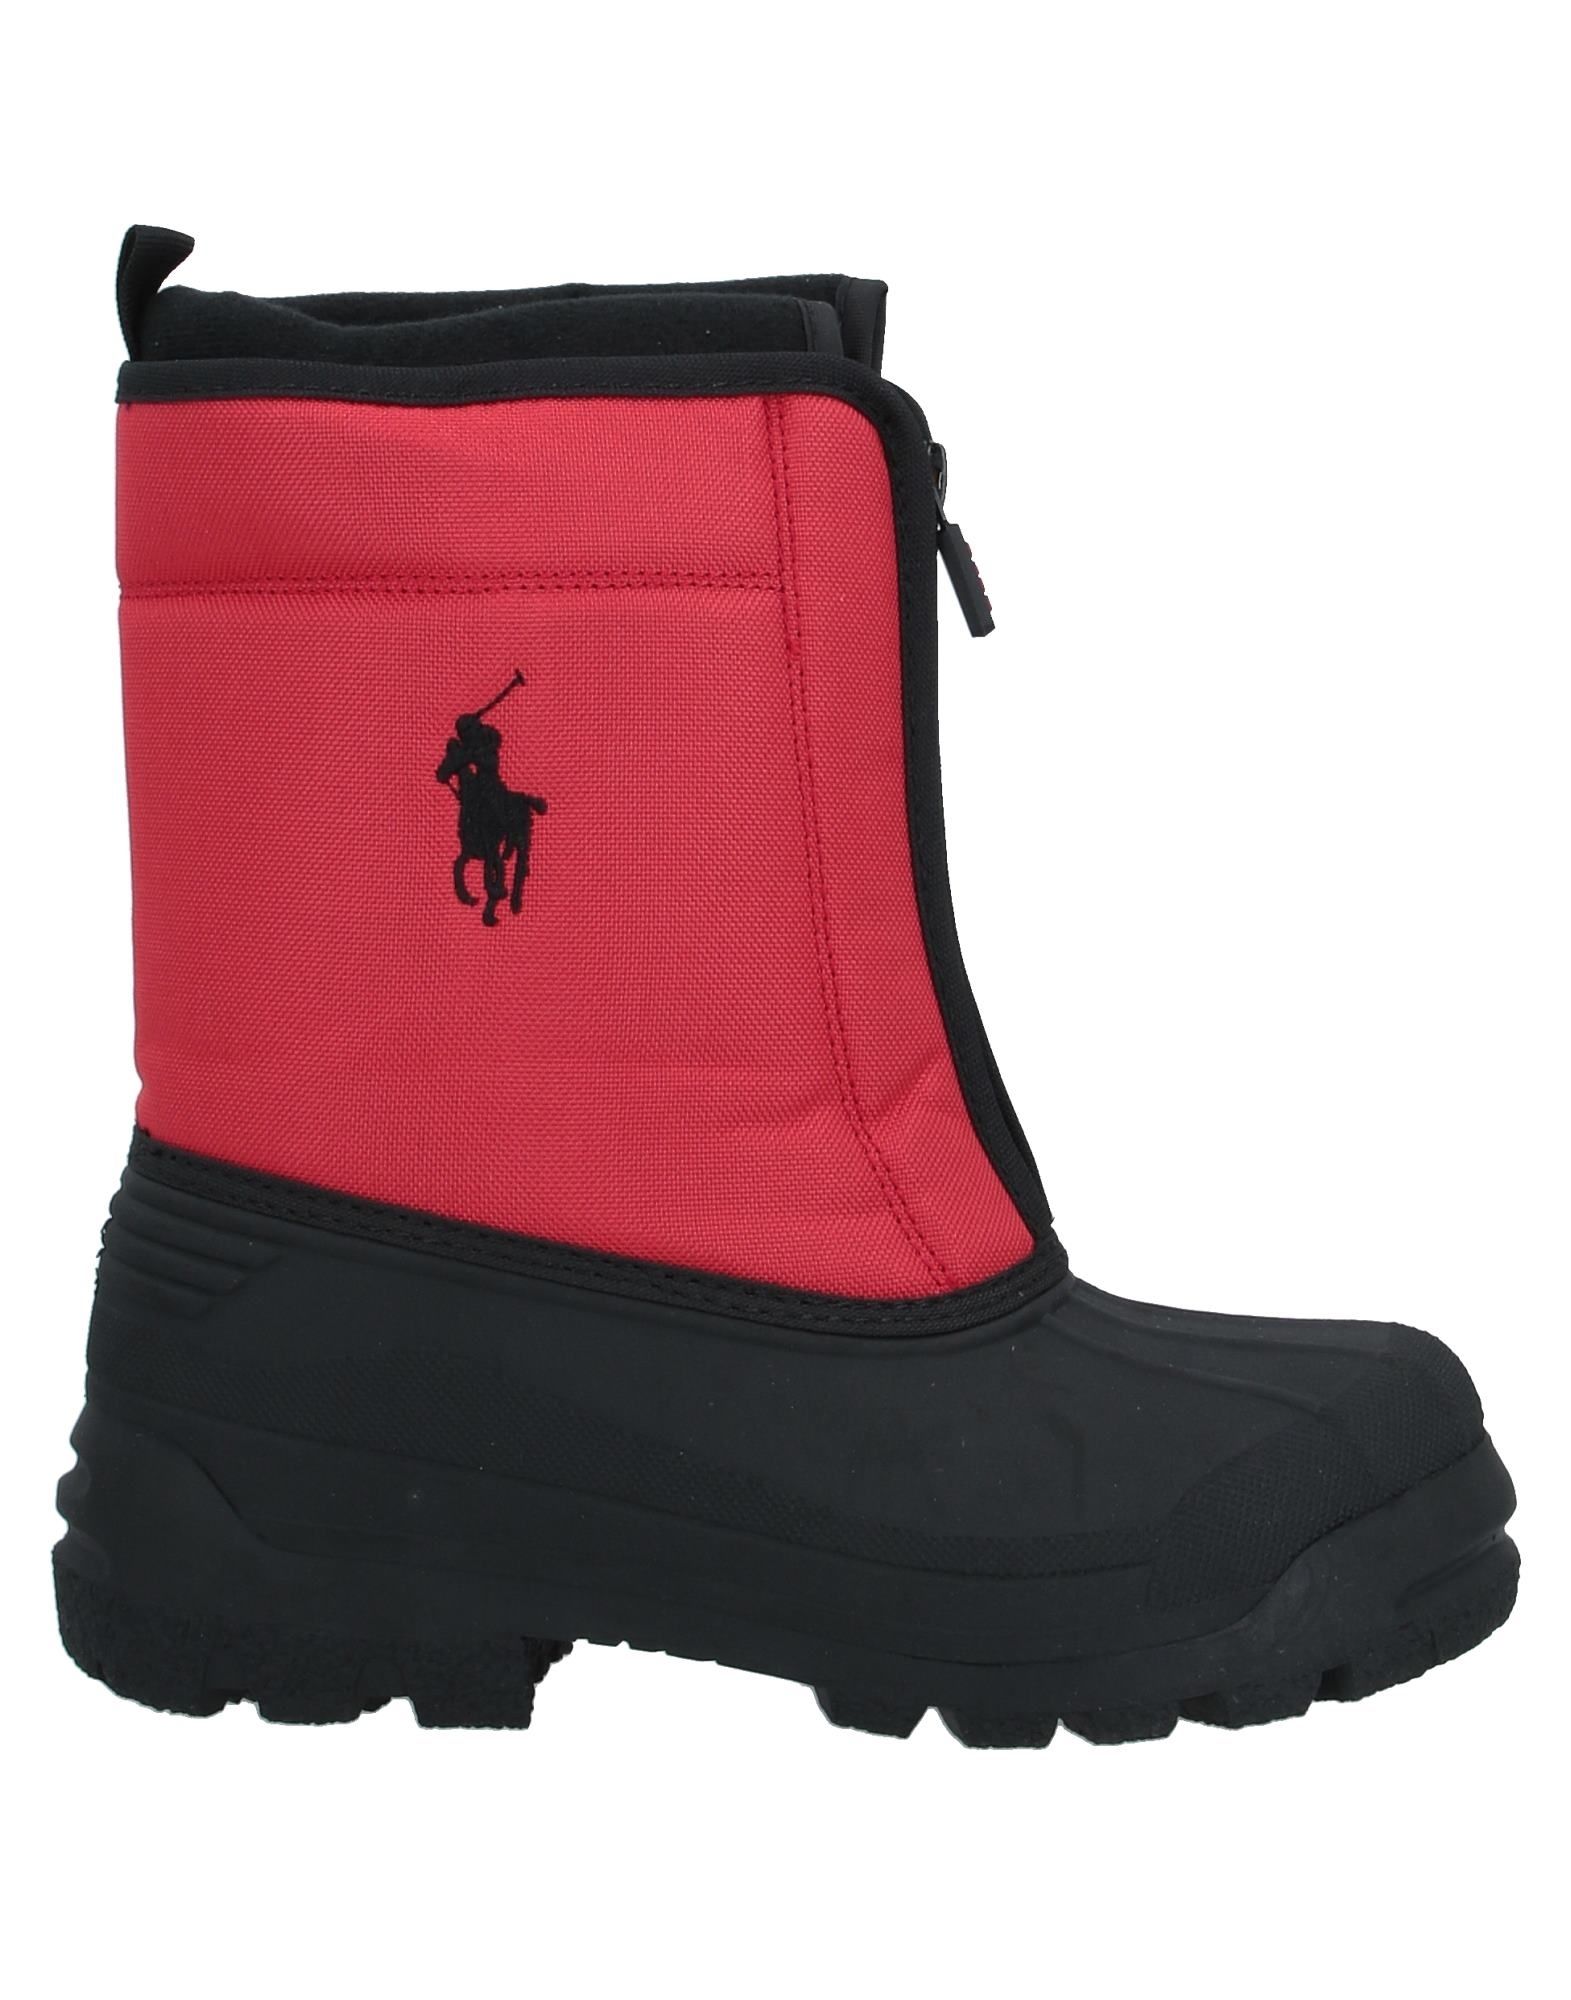 RALPH LAUREN Ankle boots - Item 11955132